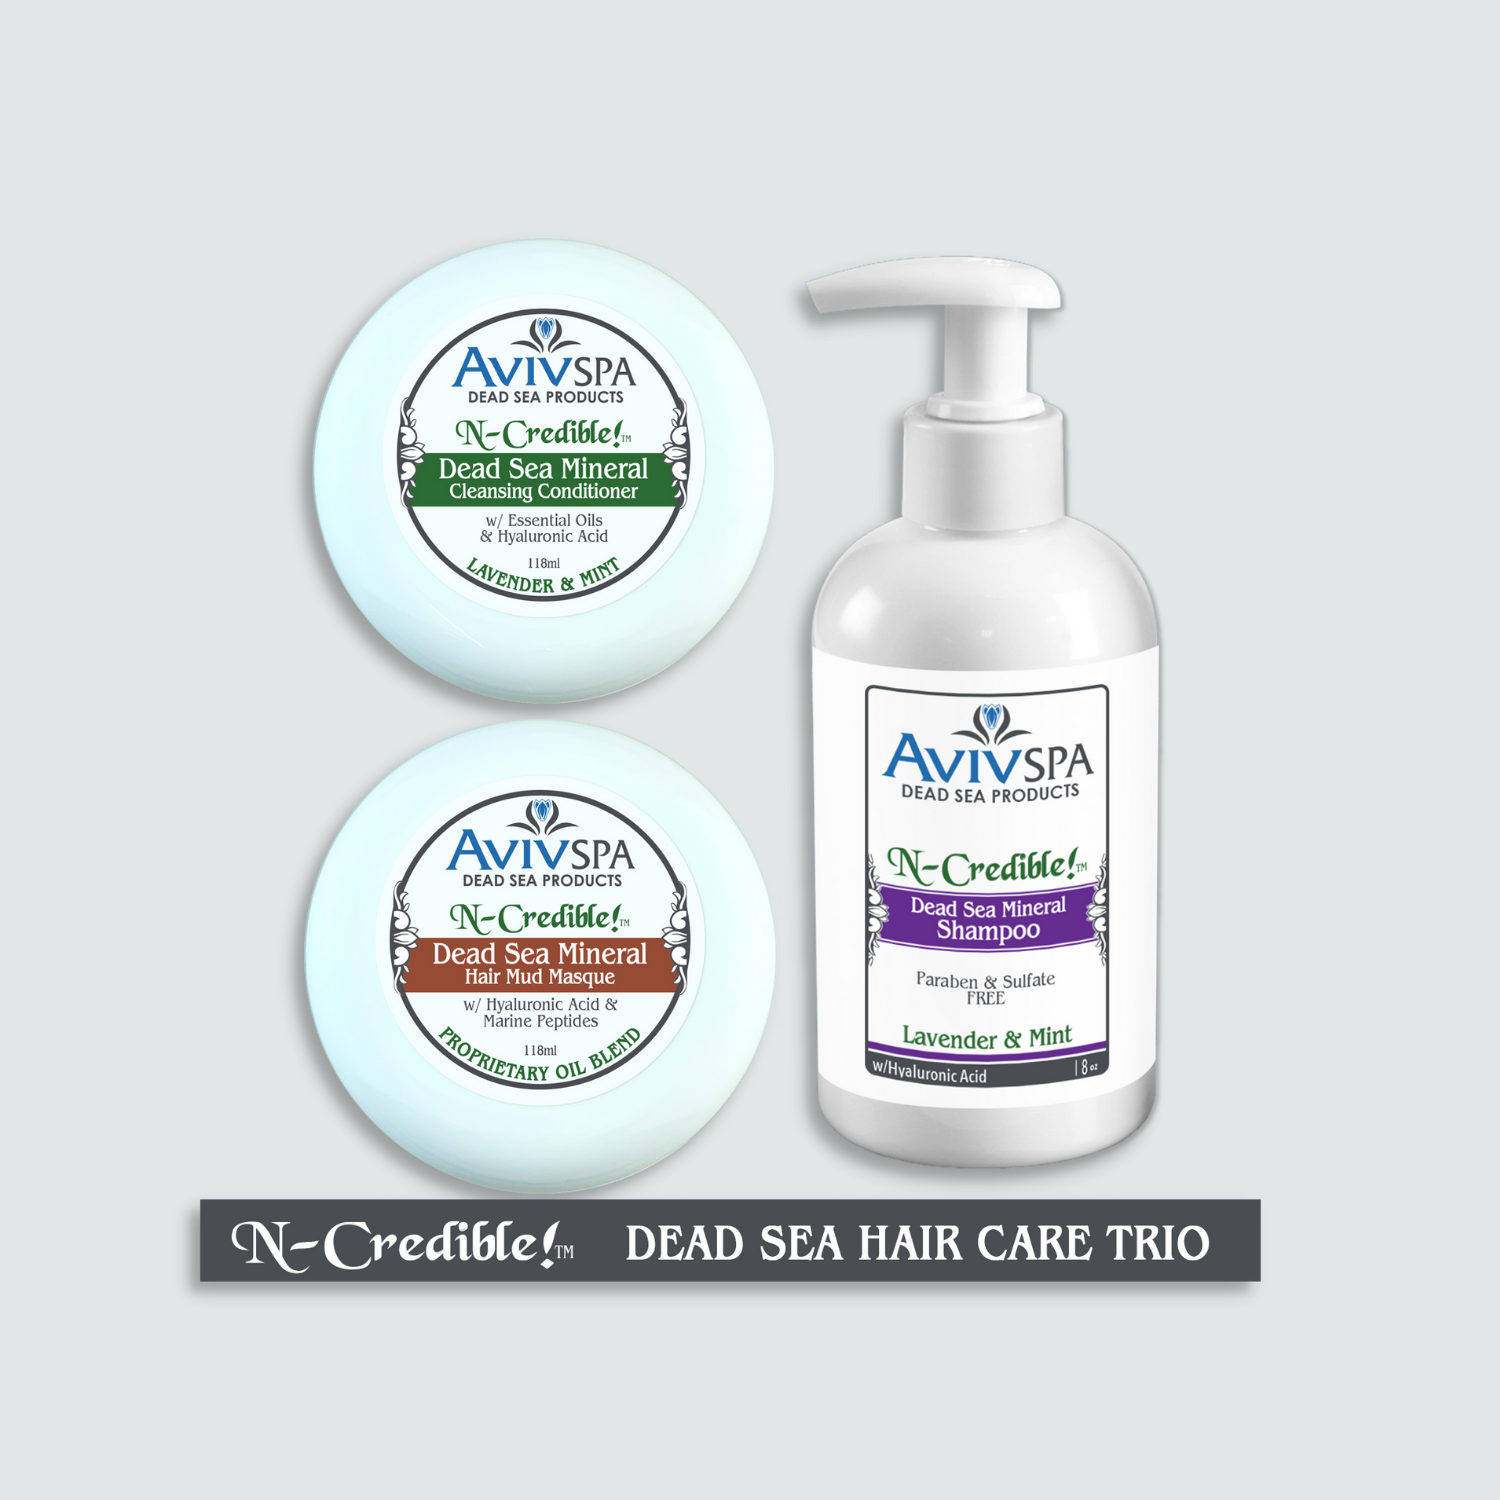 N-Credible! Dead Sea Hair Care TRIO